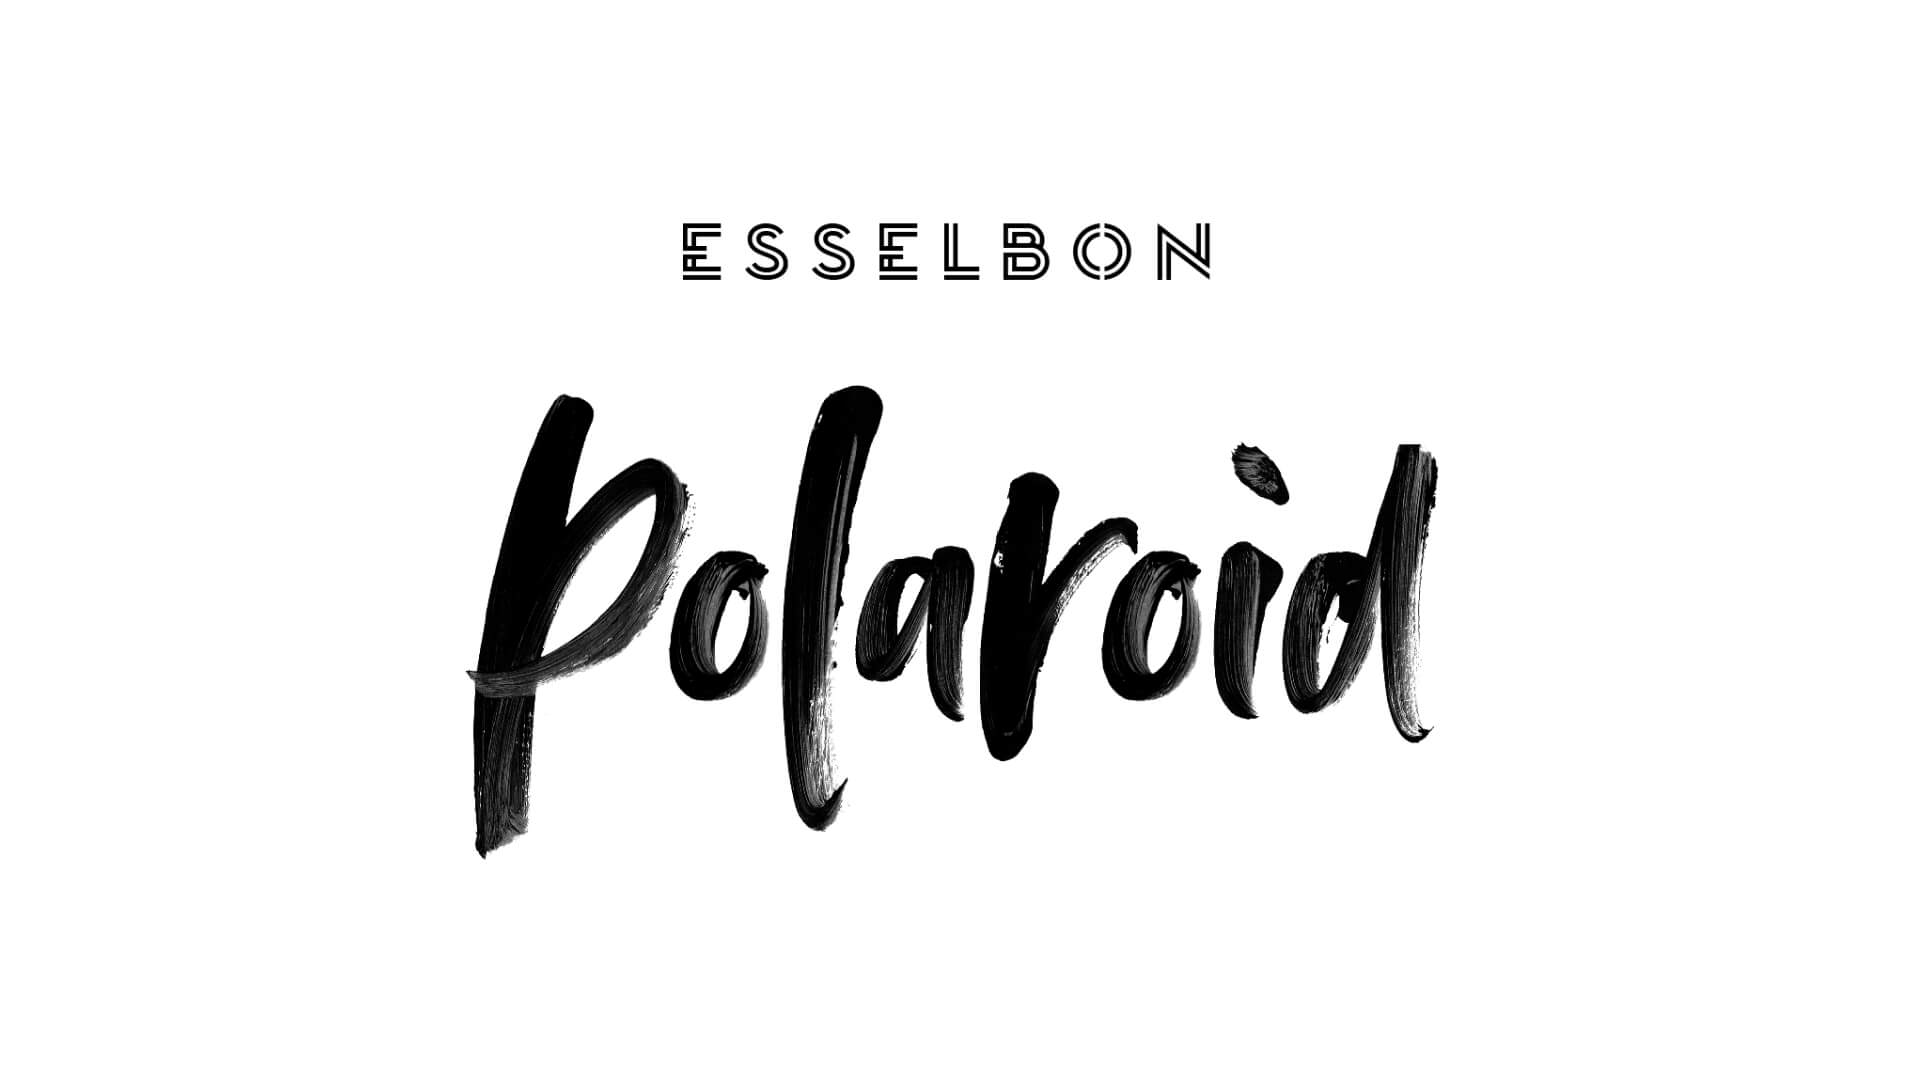 Esselbon - Polaroid